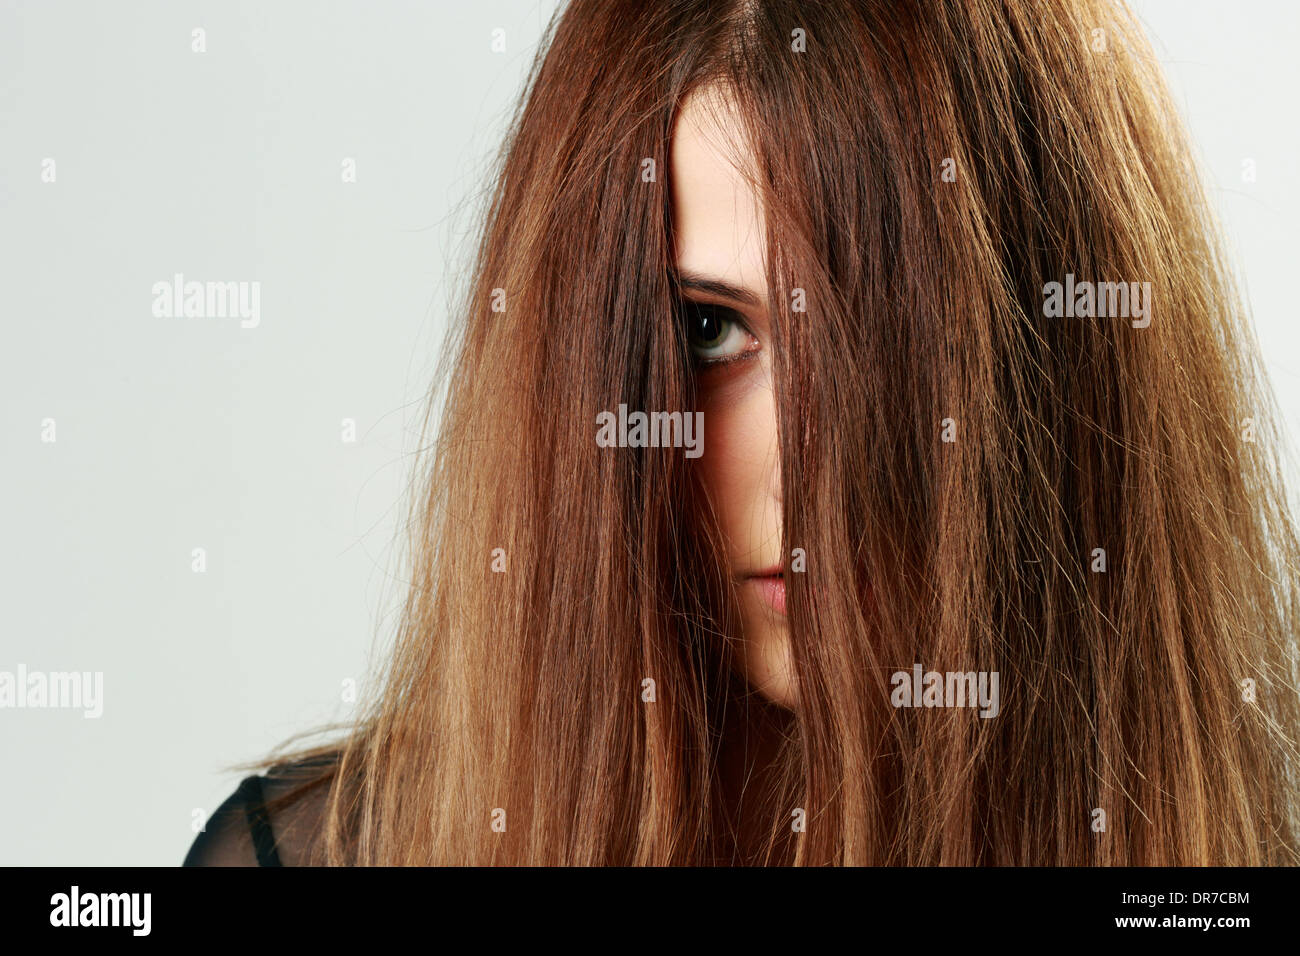 Closeup portrait of a young woman face couverte de cheveux Banque D'Images